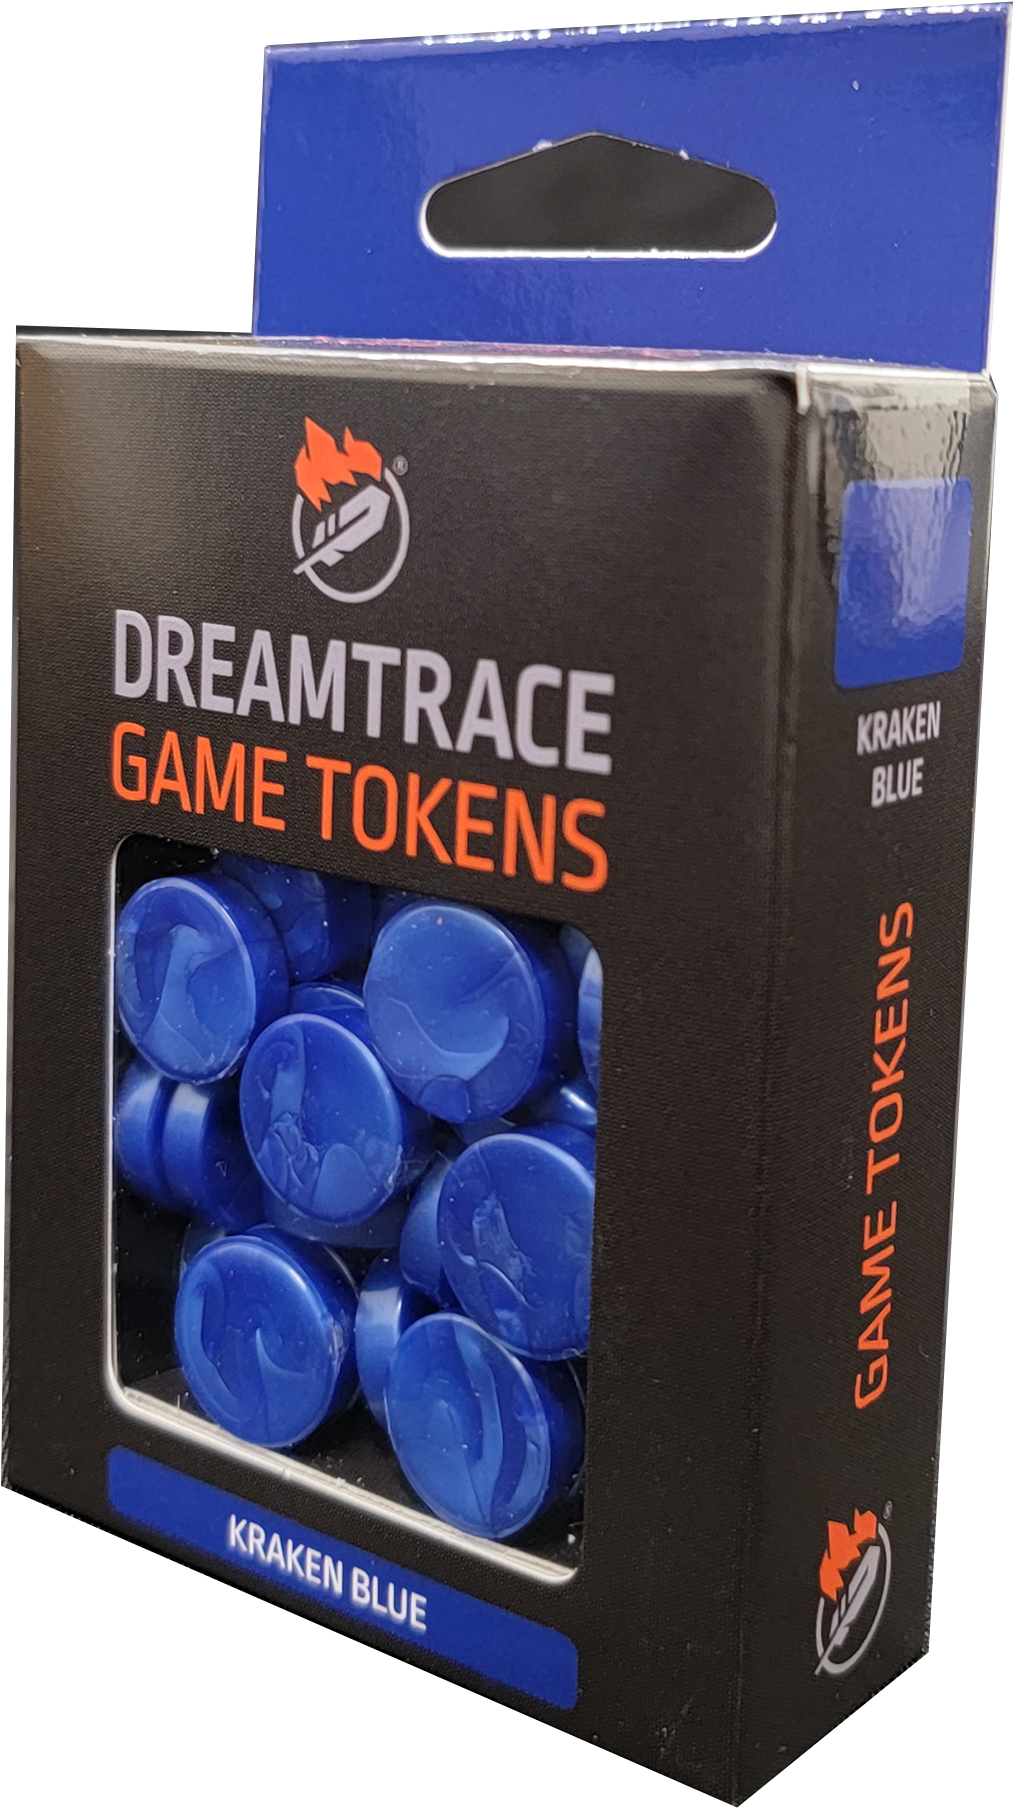 Dreamtrace Gaming Tokens: Kraken Blue 